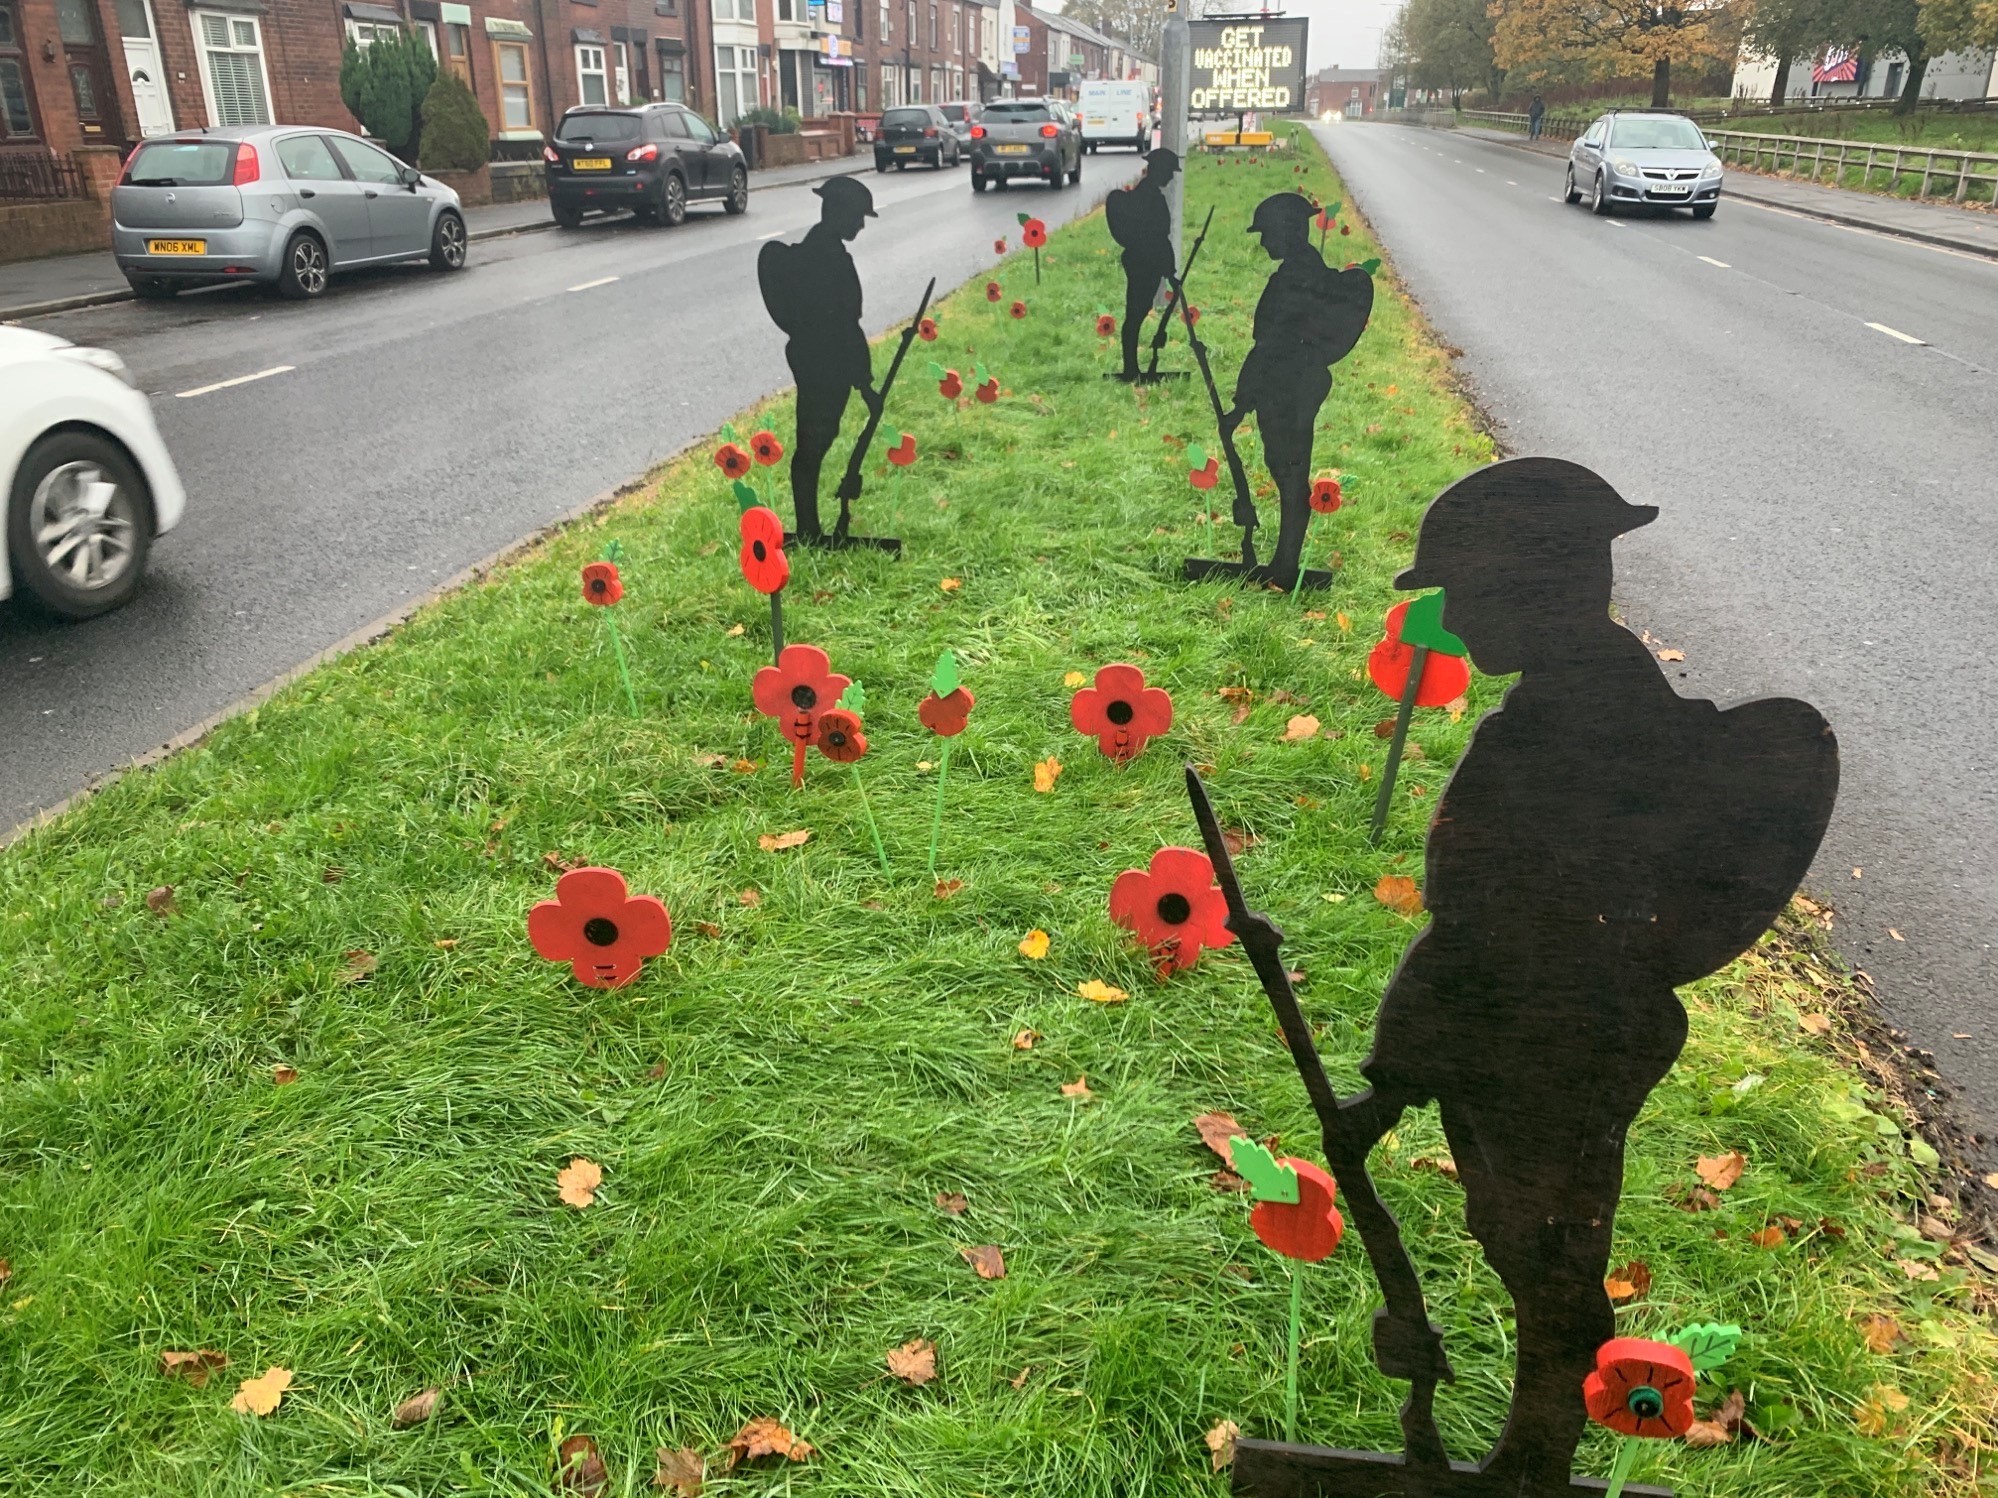 IN MEMORY: Poppy display in Breightmet on Bury New Road